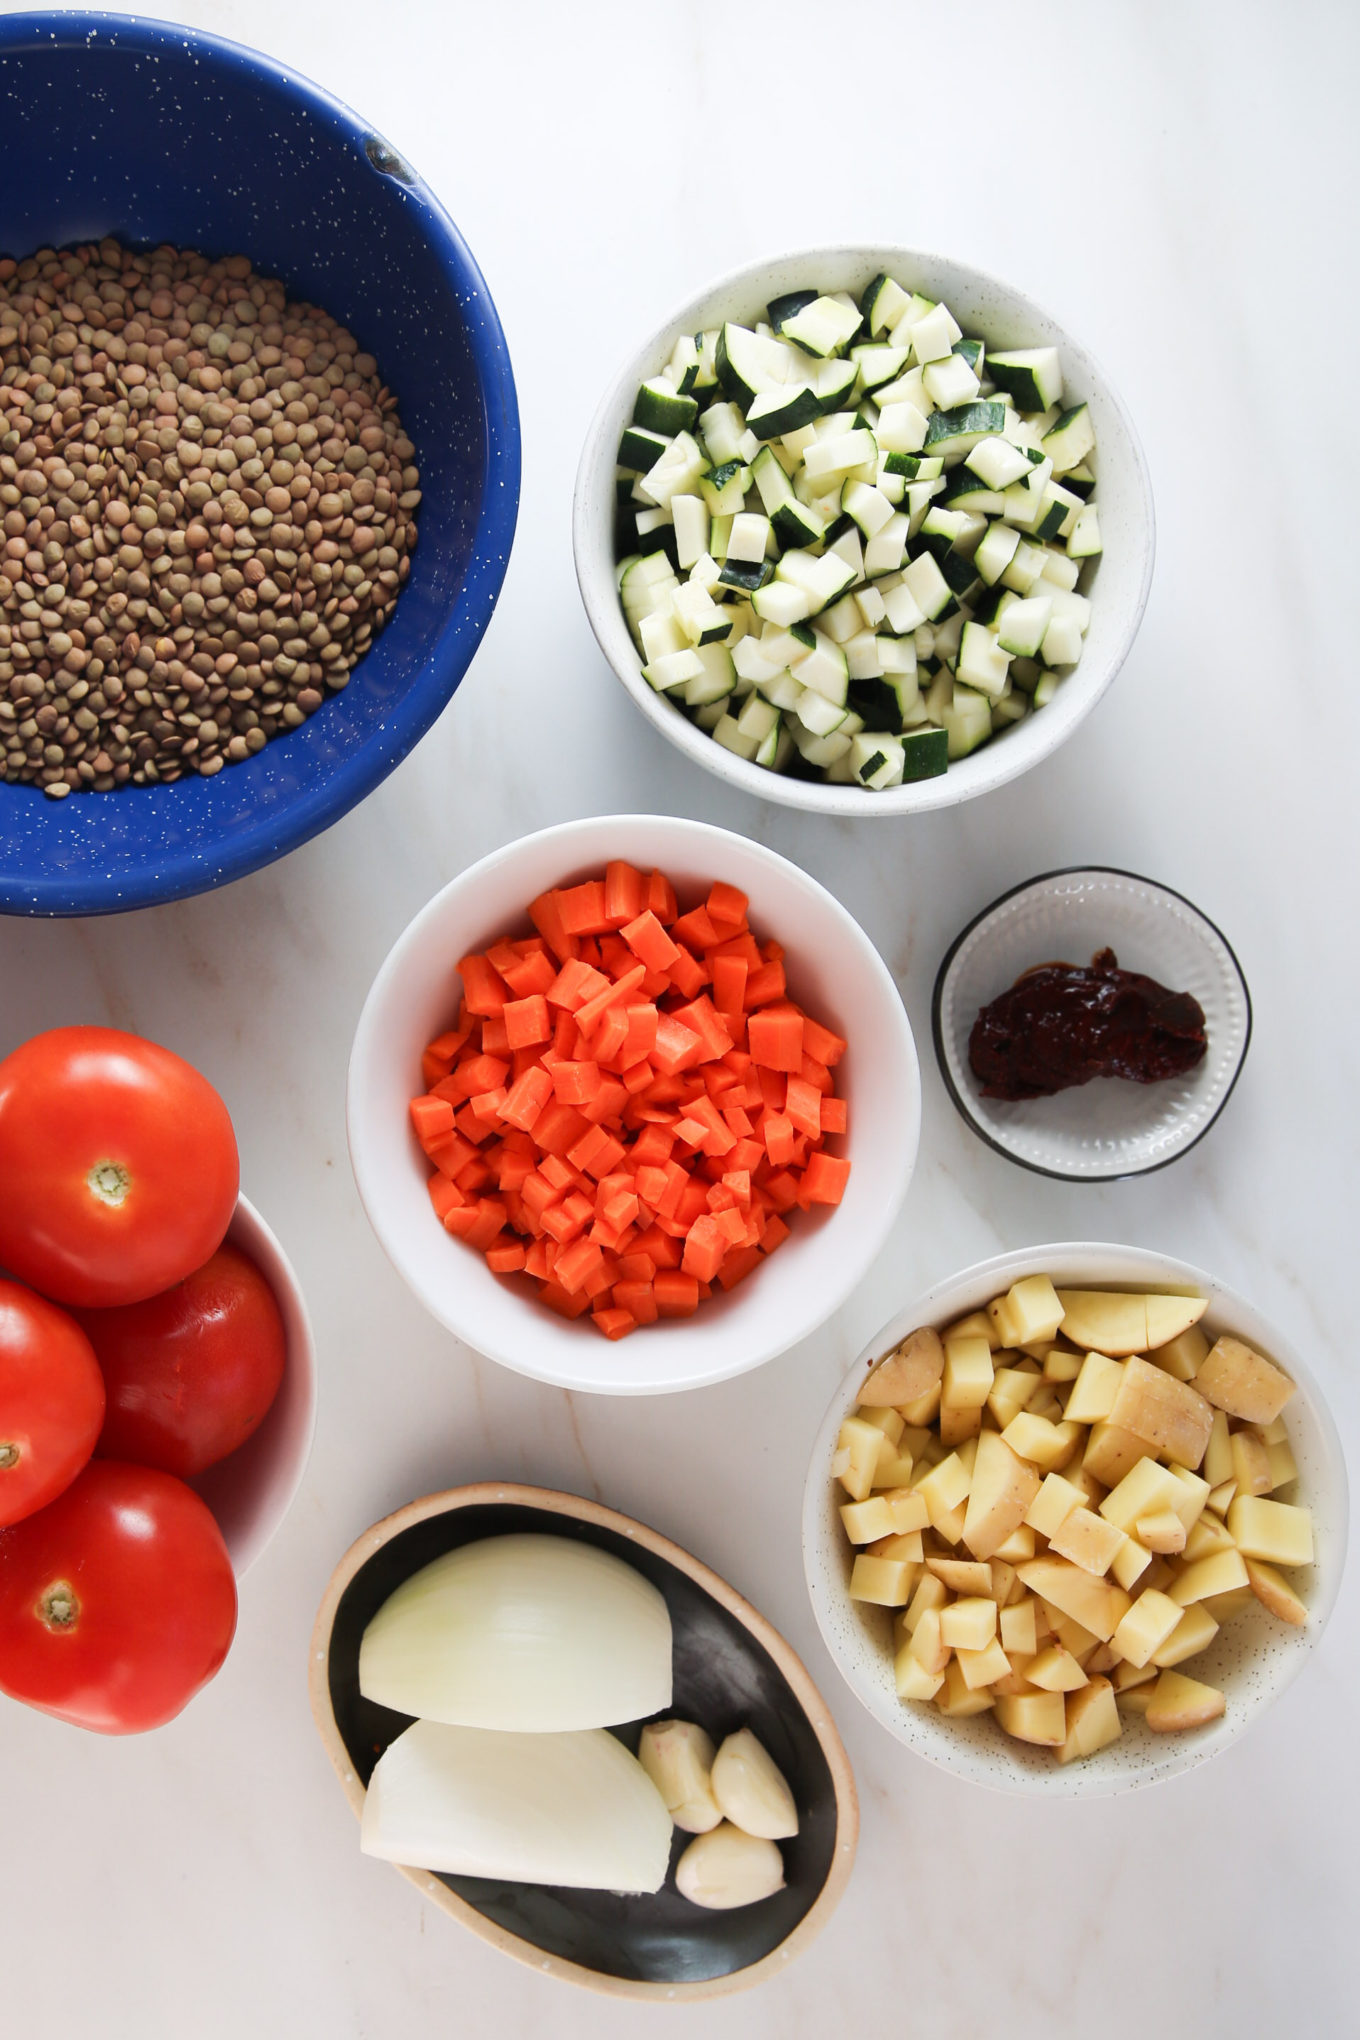 Una mesa está llena de una colorida variedad de verduras, incluidas lentejas, para un delicioso plato vegetariano.